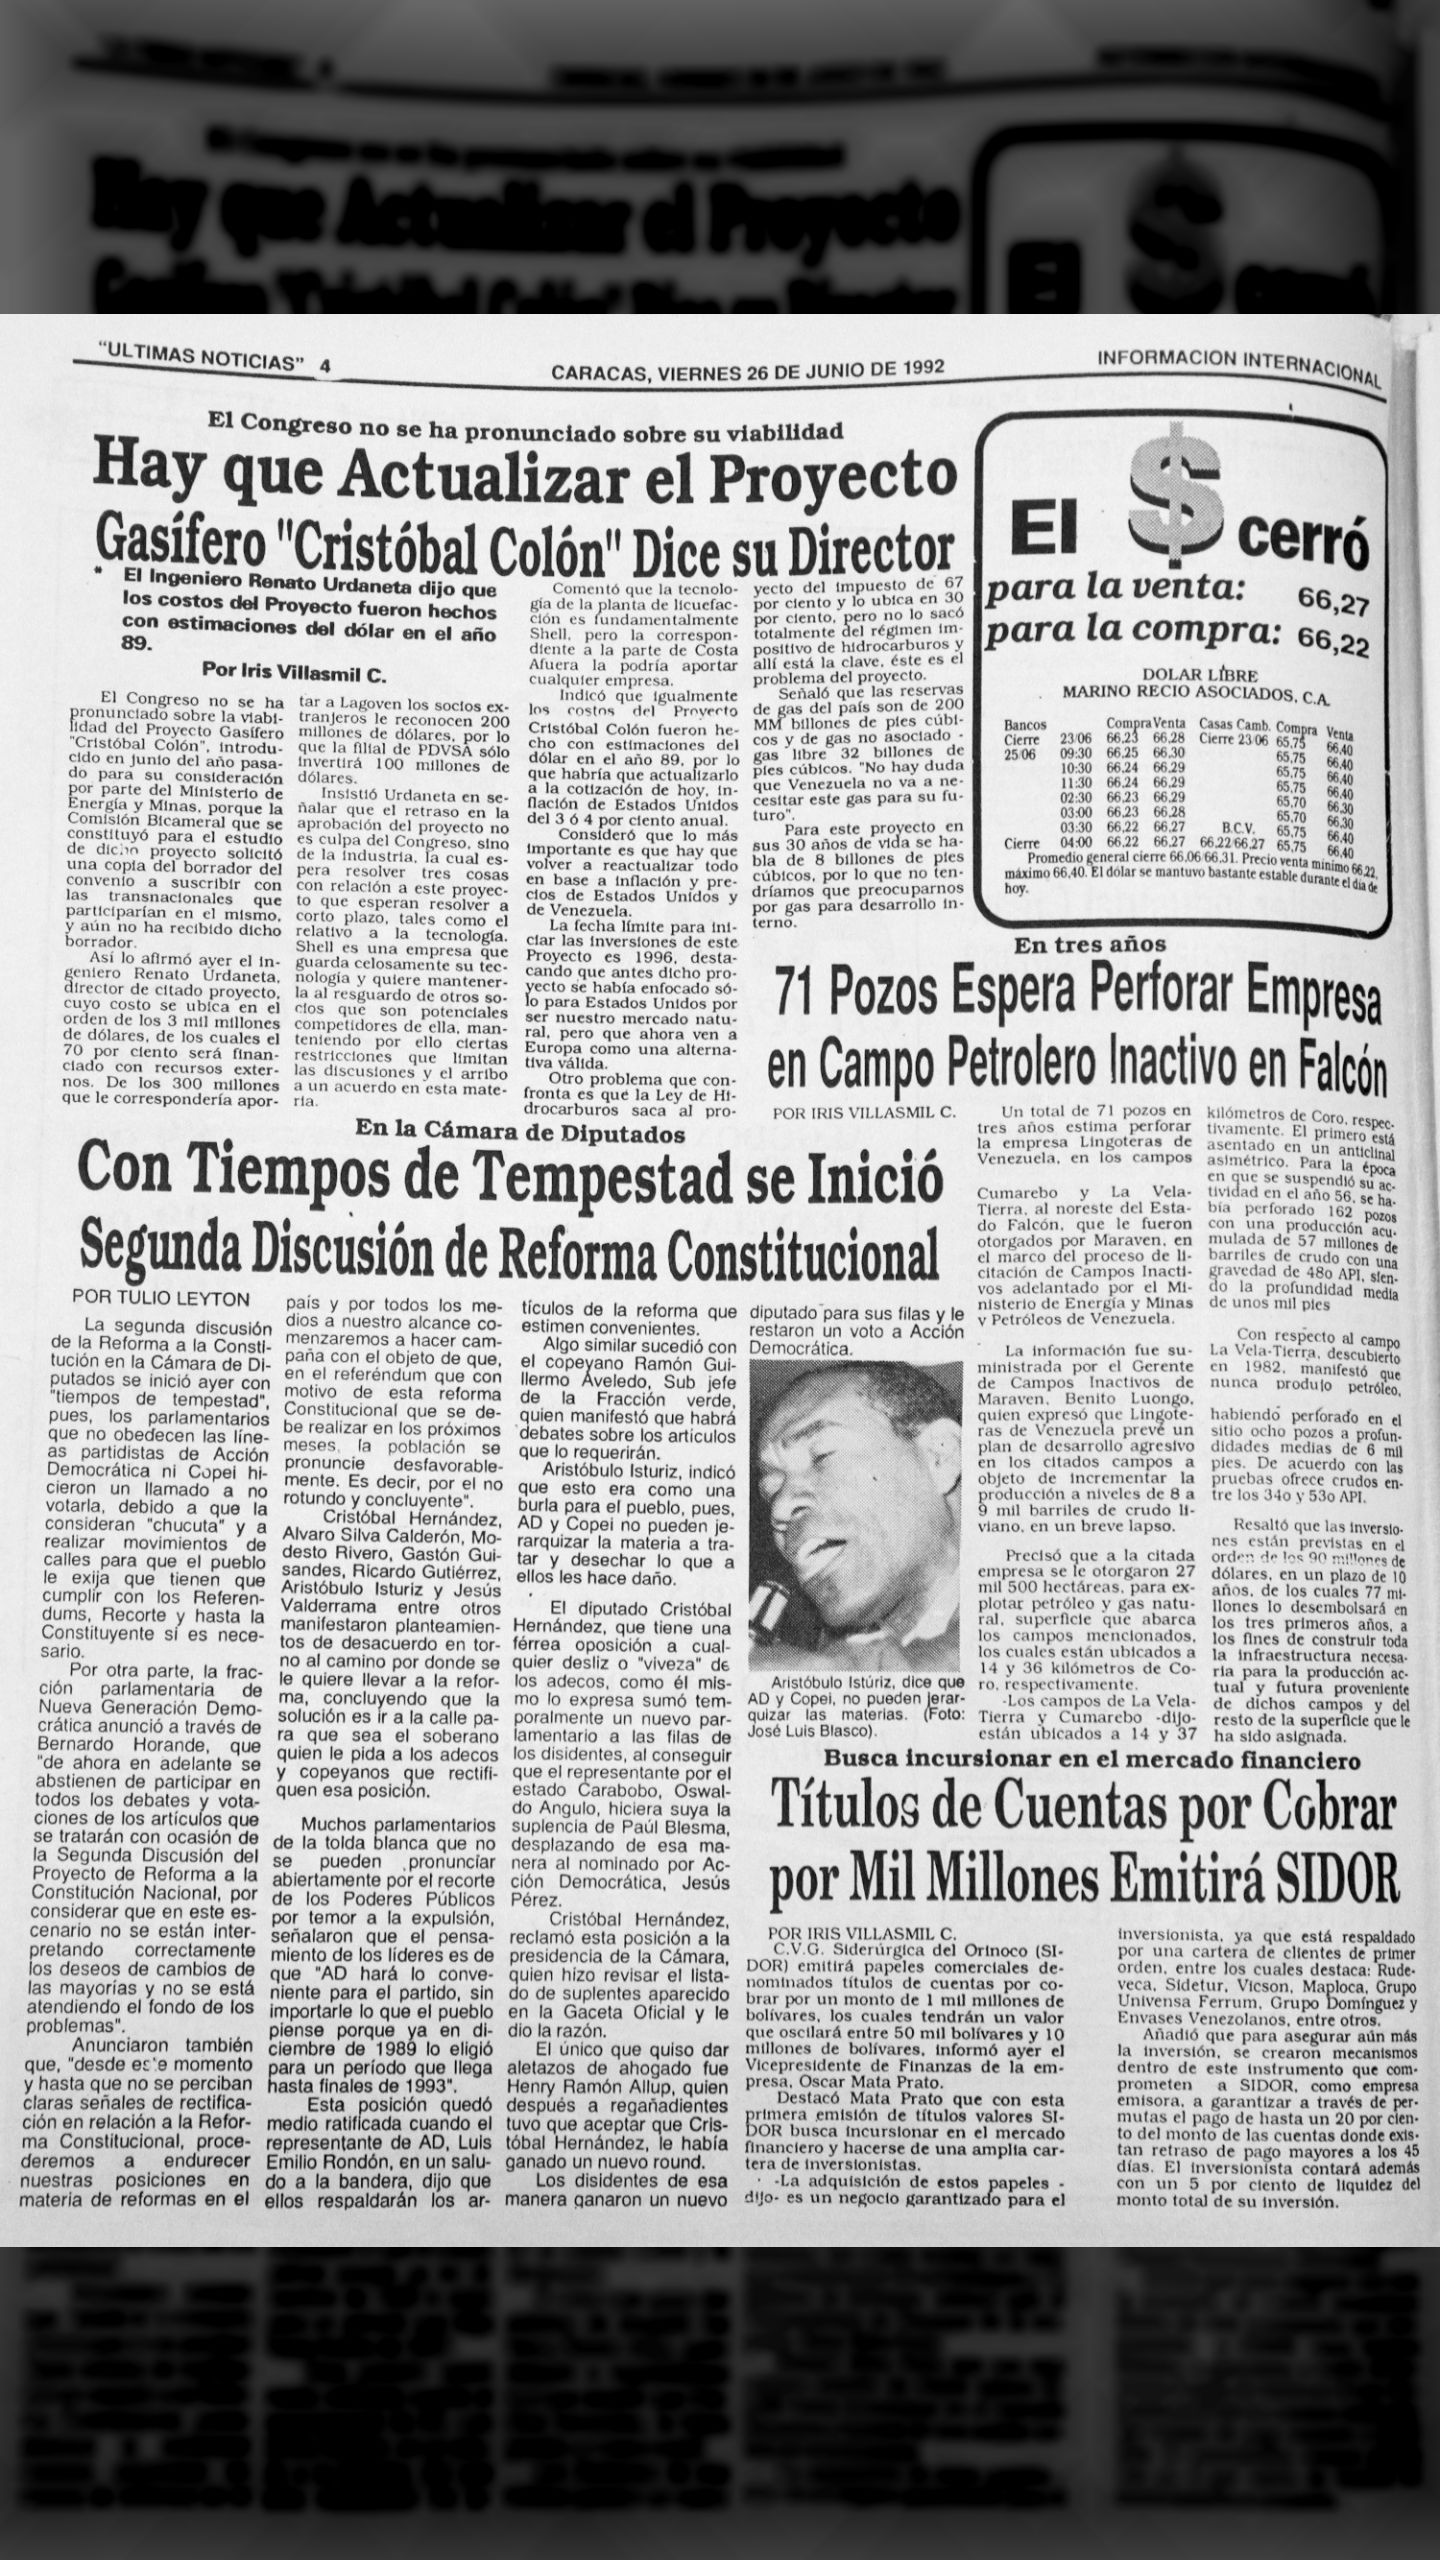 Inició segunda discusión de la reforma constitucional, Aristóbulo Istúriz dice que AD y Copey no pueden jerarquizar las materias (Últimas Noticias, 26 de junio de 1992)